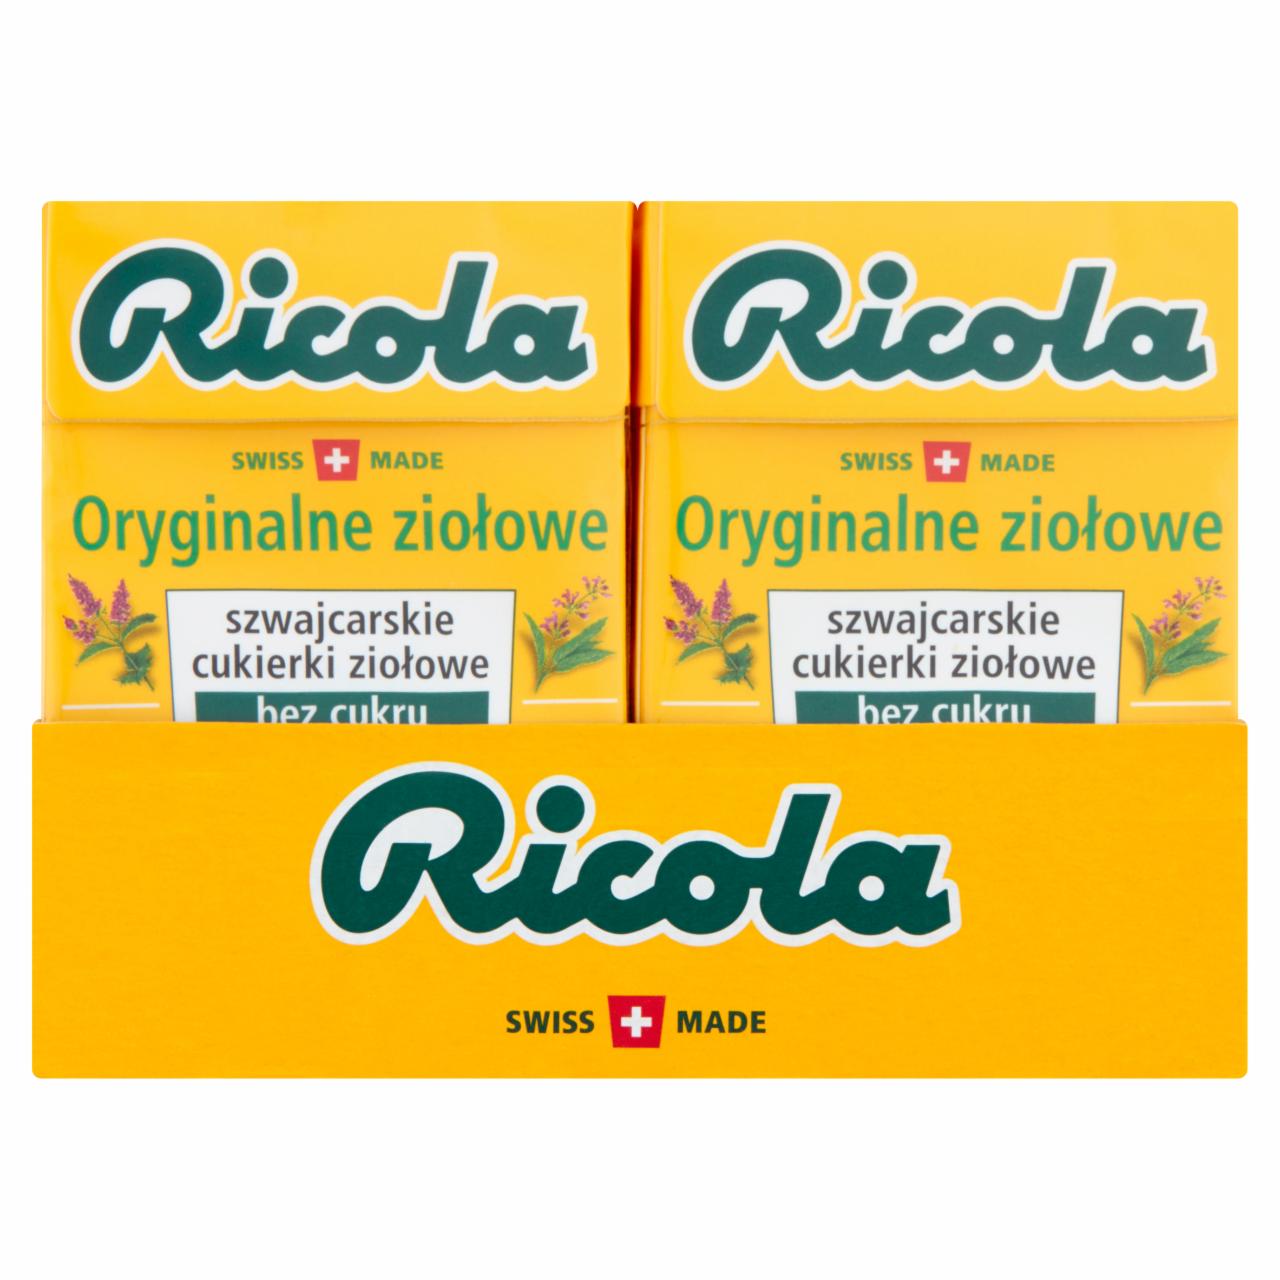 Zdjęcia - Ricola Szwajcarskie cukierki ziołowe oryginalne ziołowe 20 x 27,5 g